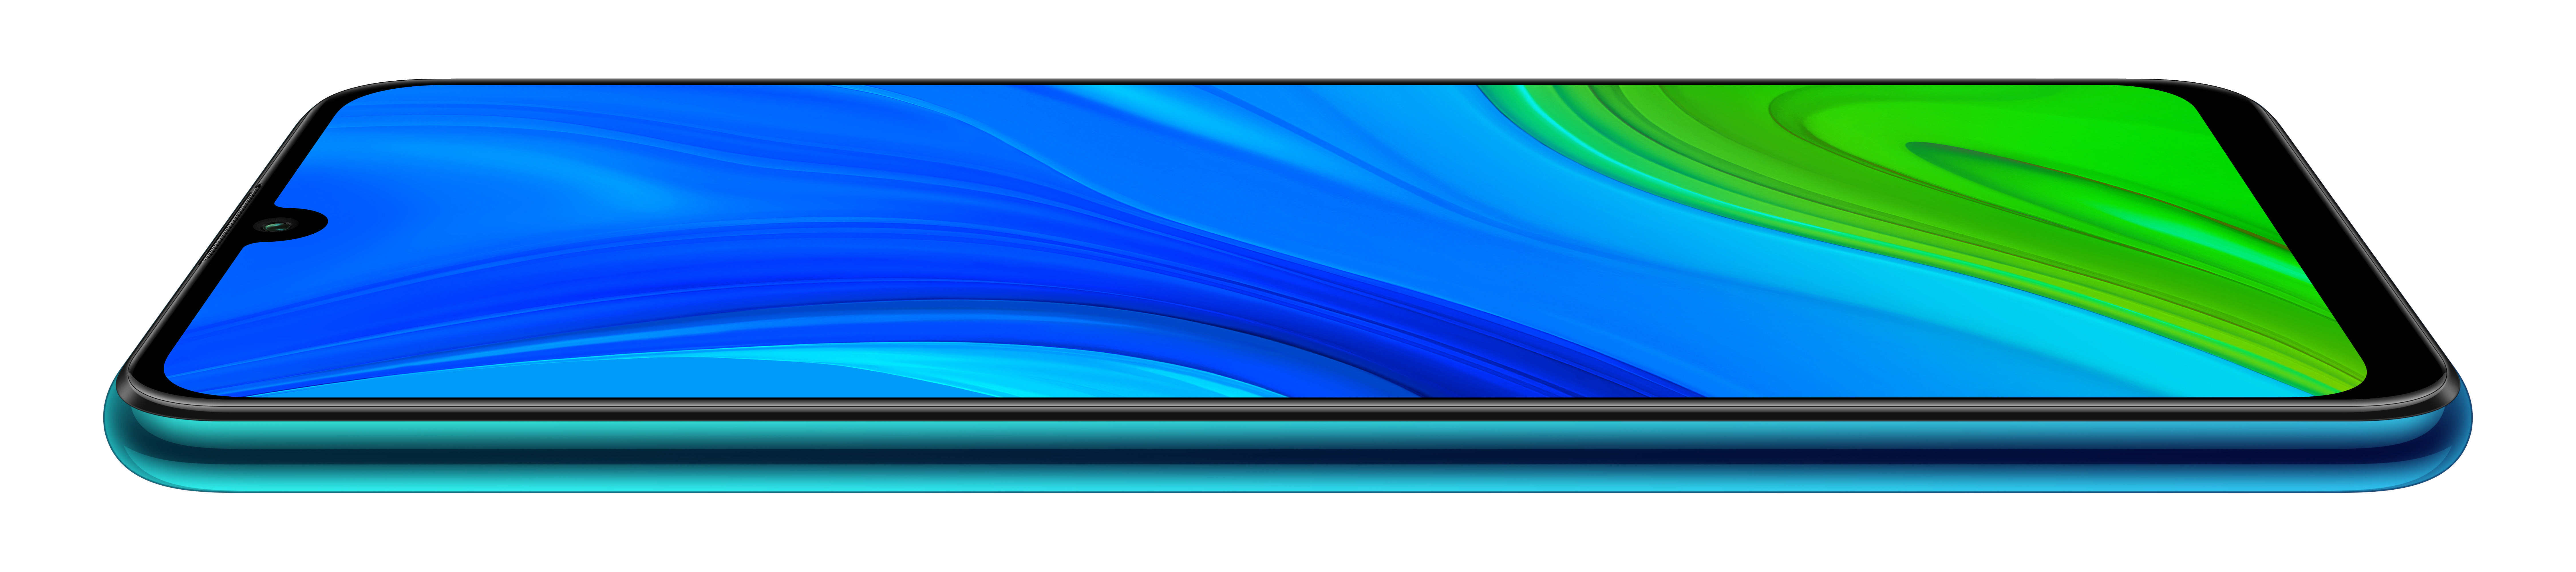 HUAWEI P smart 2020 128 SIM Dual Blue GB Aurora